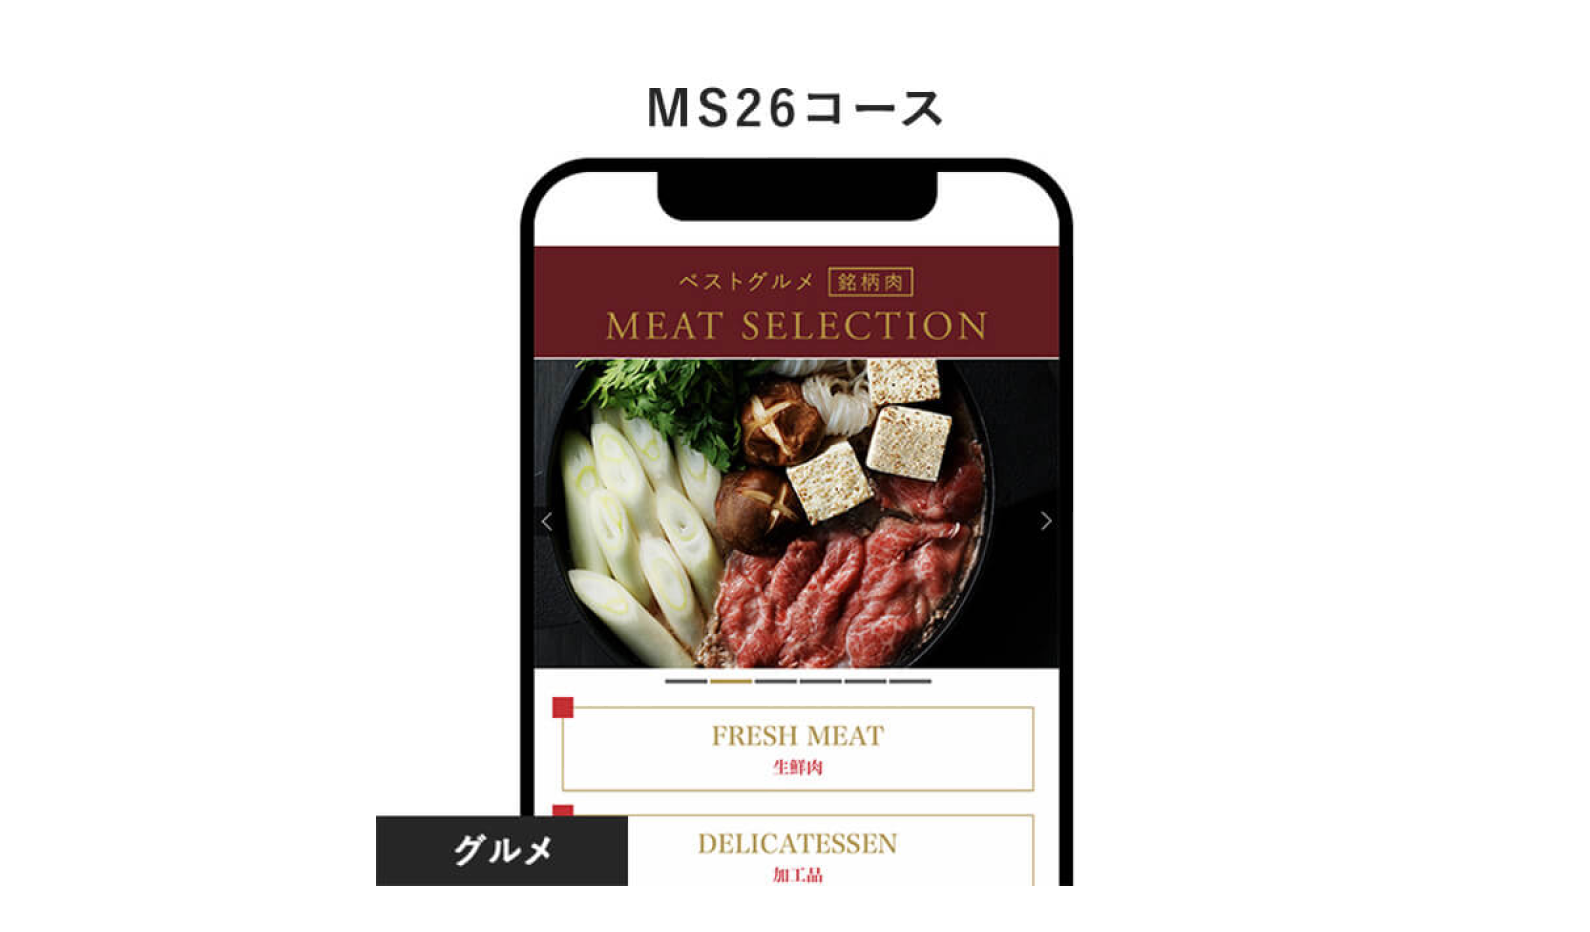 10.ベストグルメ〜銘柄肉〜 MEAT SELECTION e-order gift ＜MS26＞